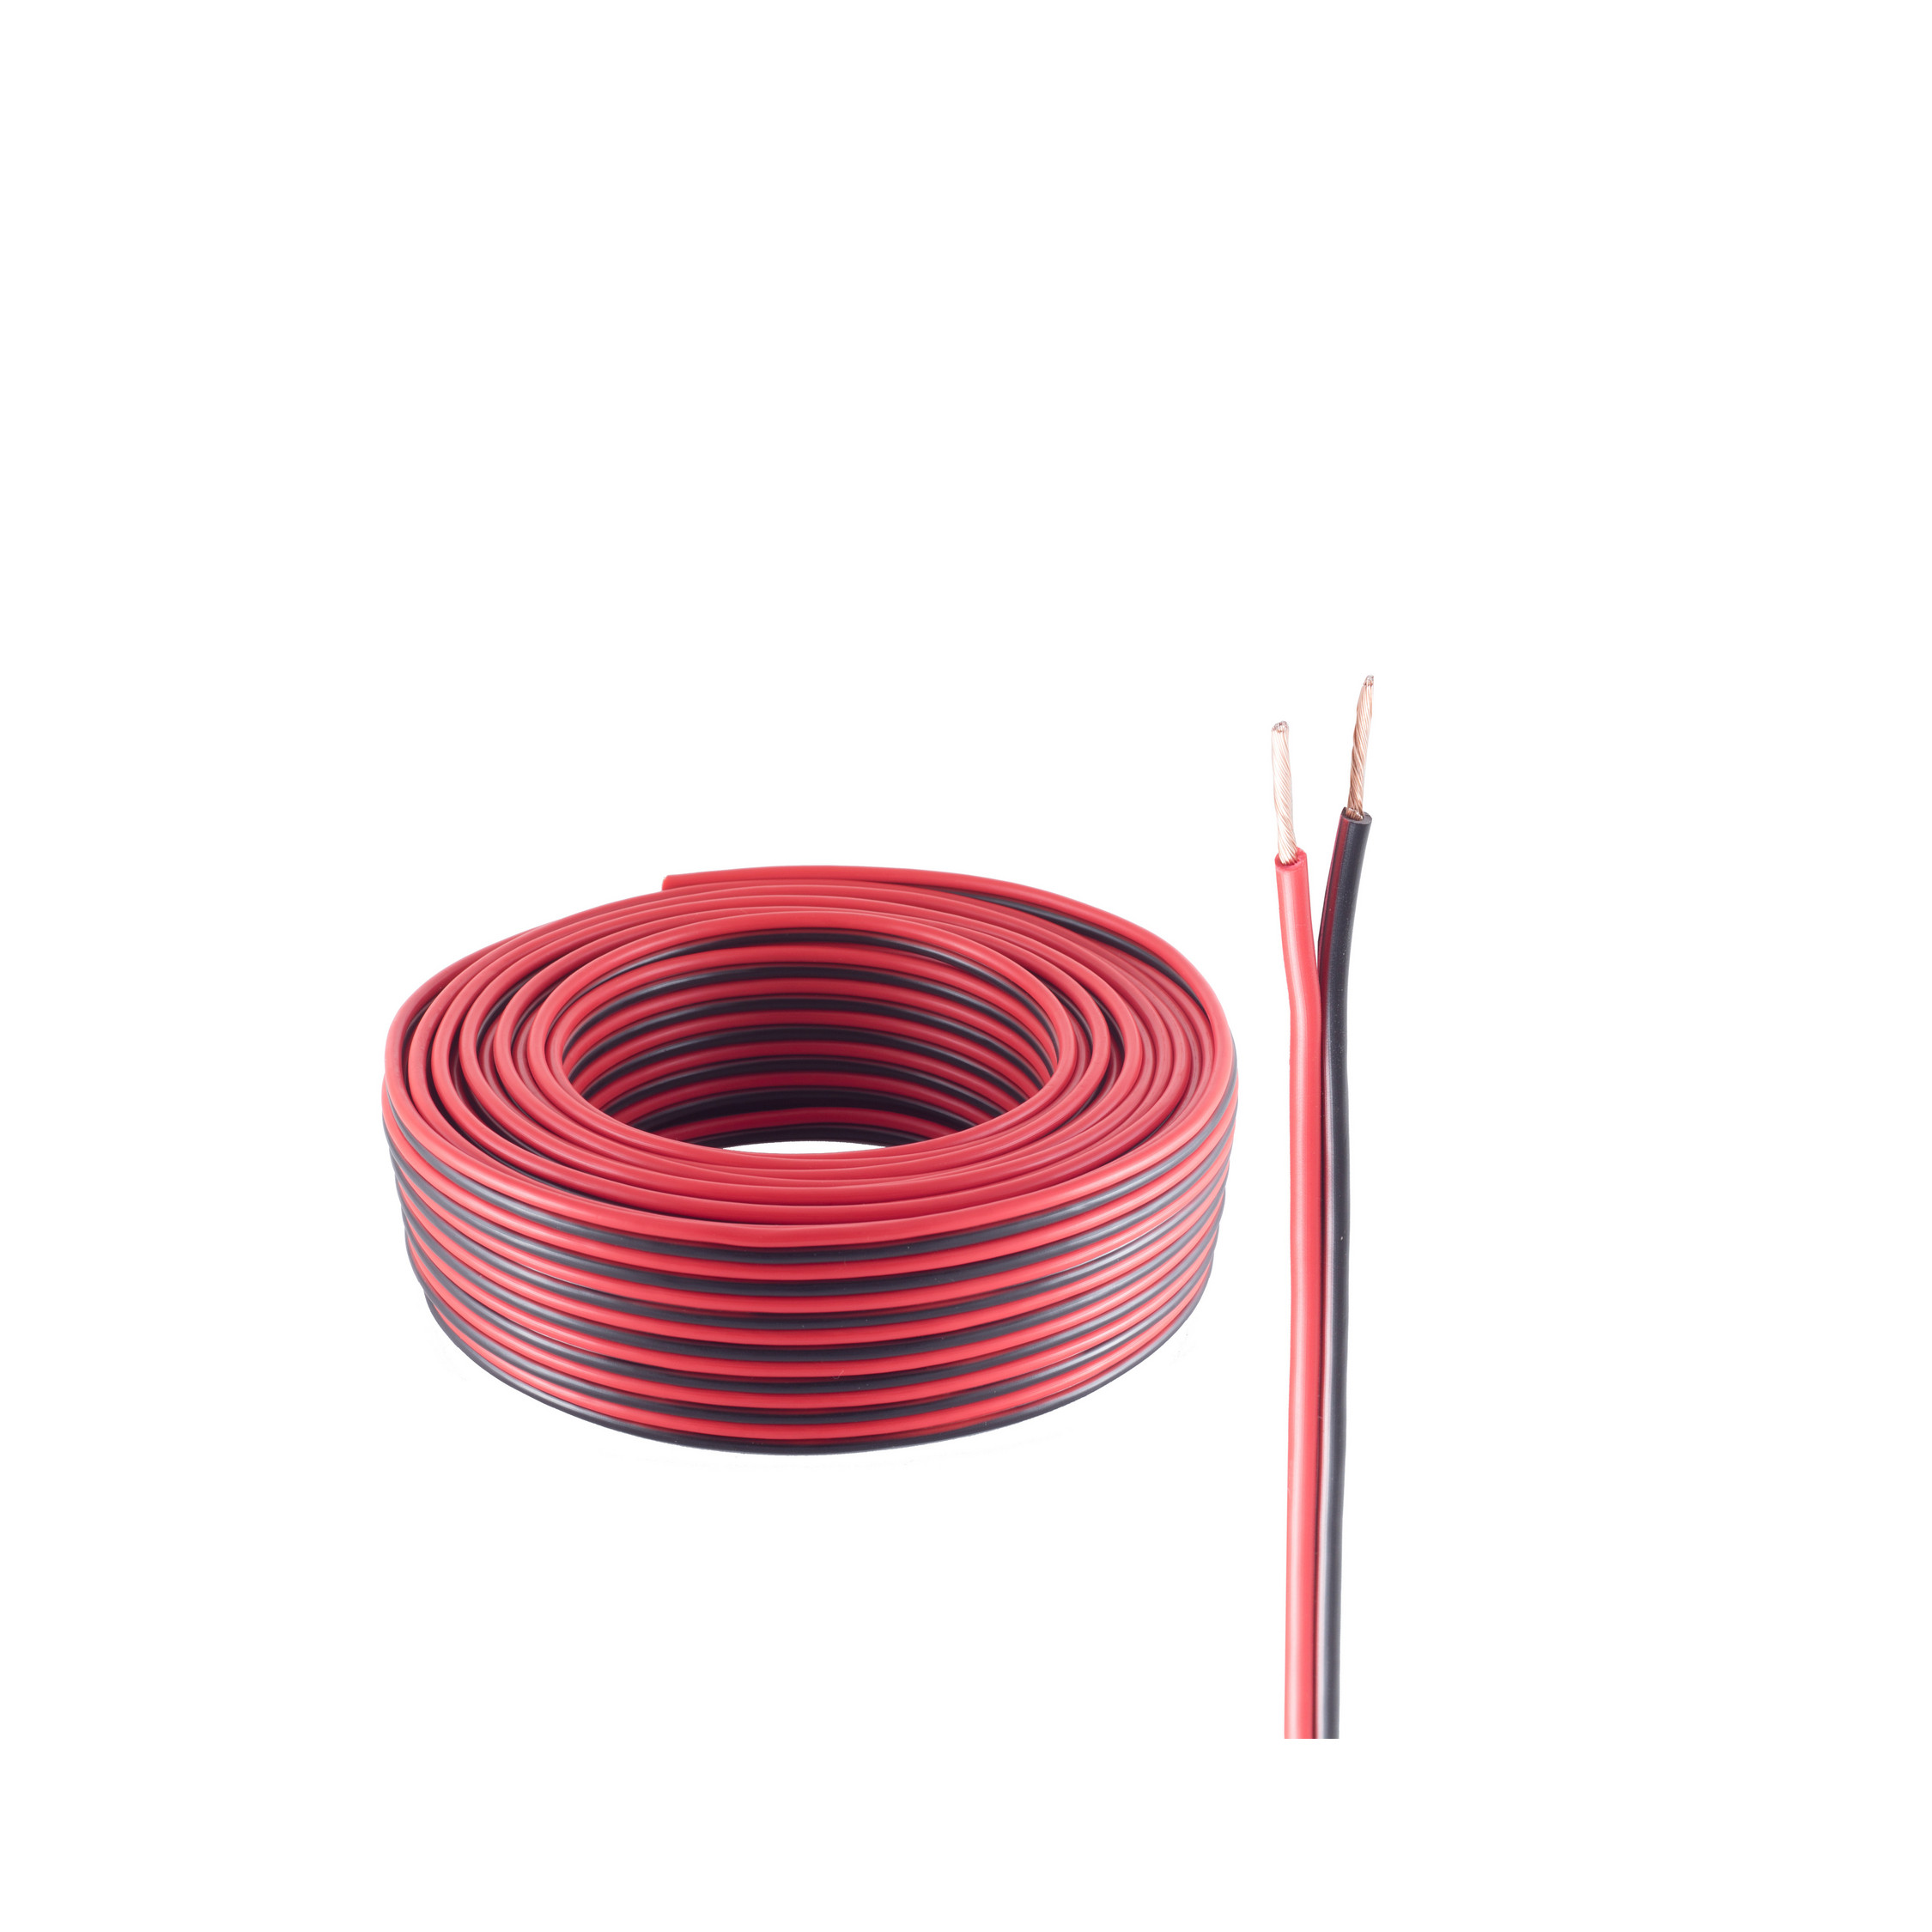 LS-Kabel 48x0,20 SHIVERPEAKS 25m, 25 m rot/schwarz Lautsprecher Kabel, CCA 1,5mm²